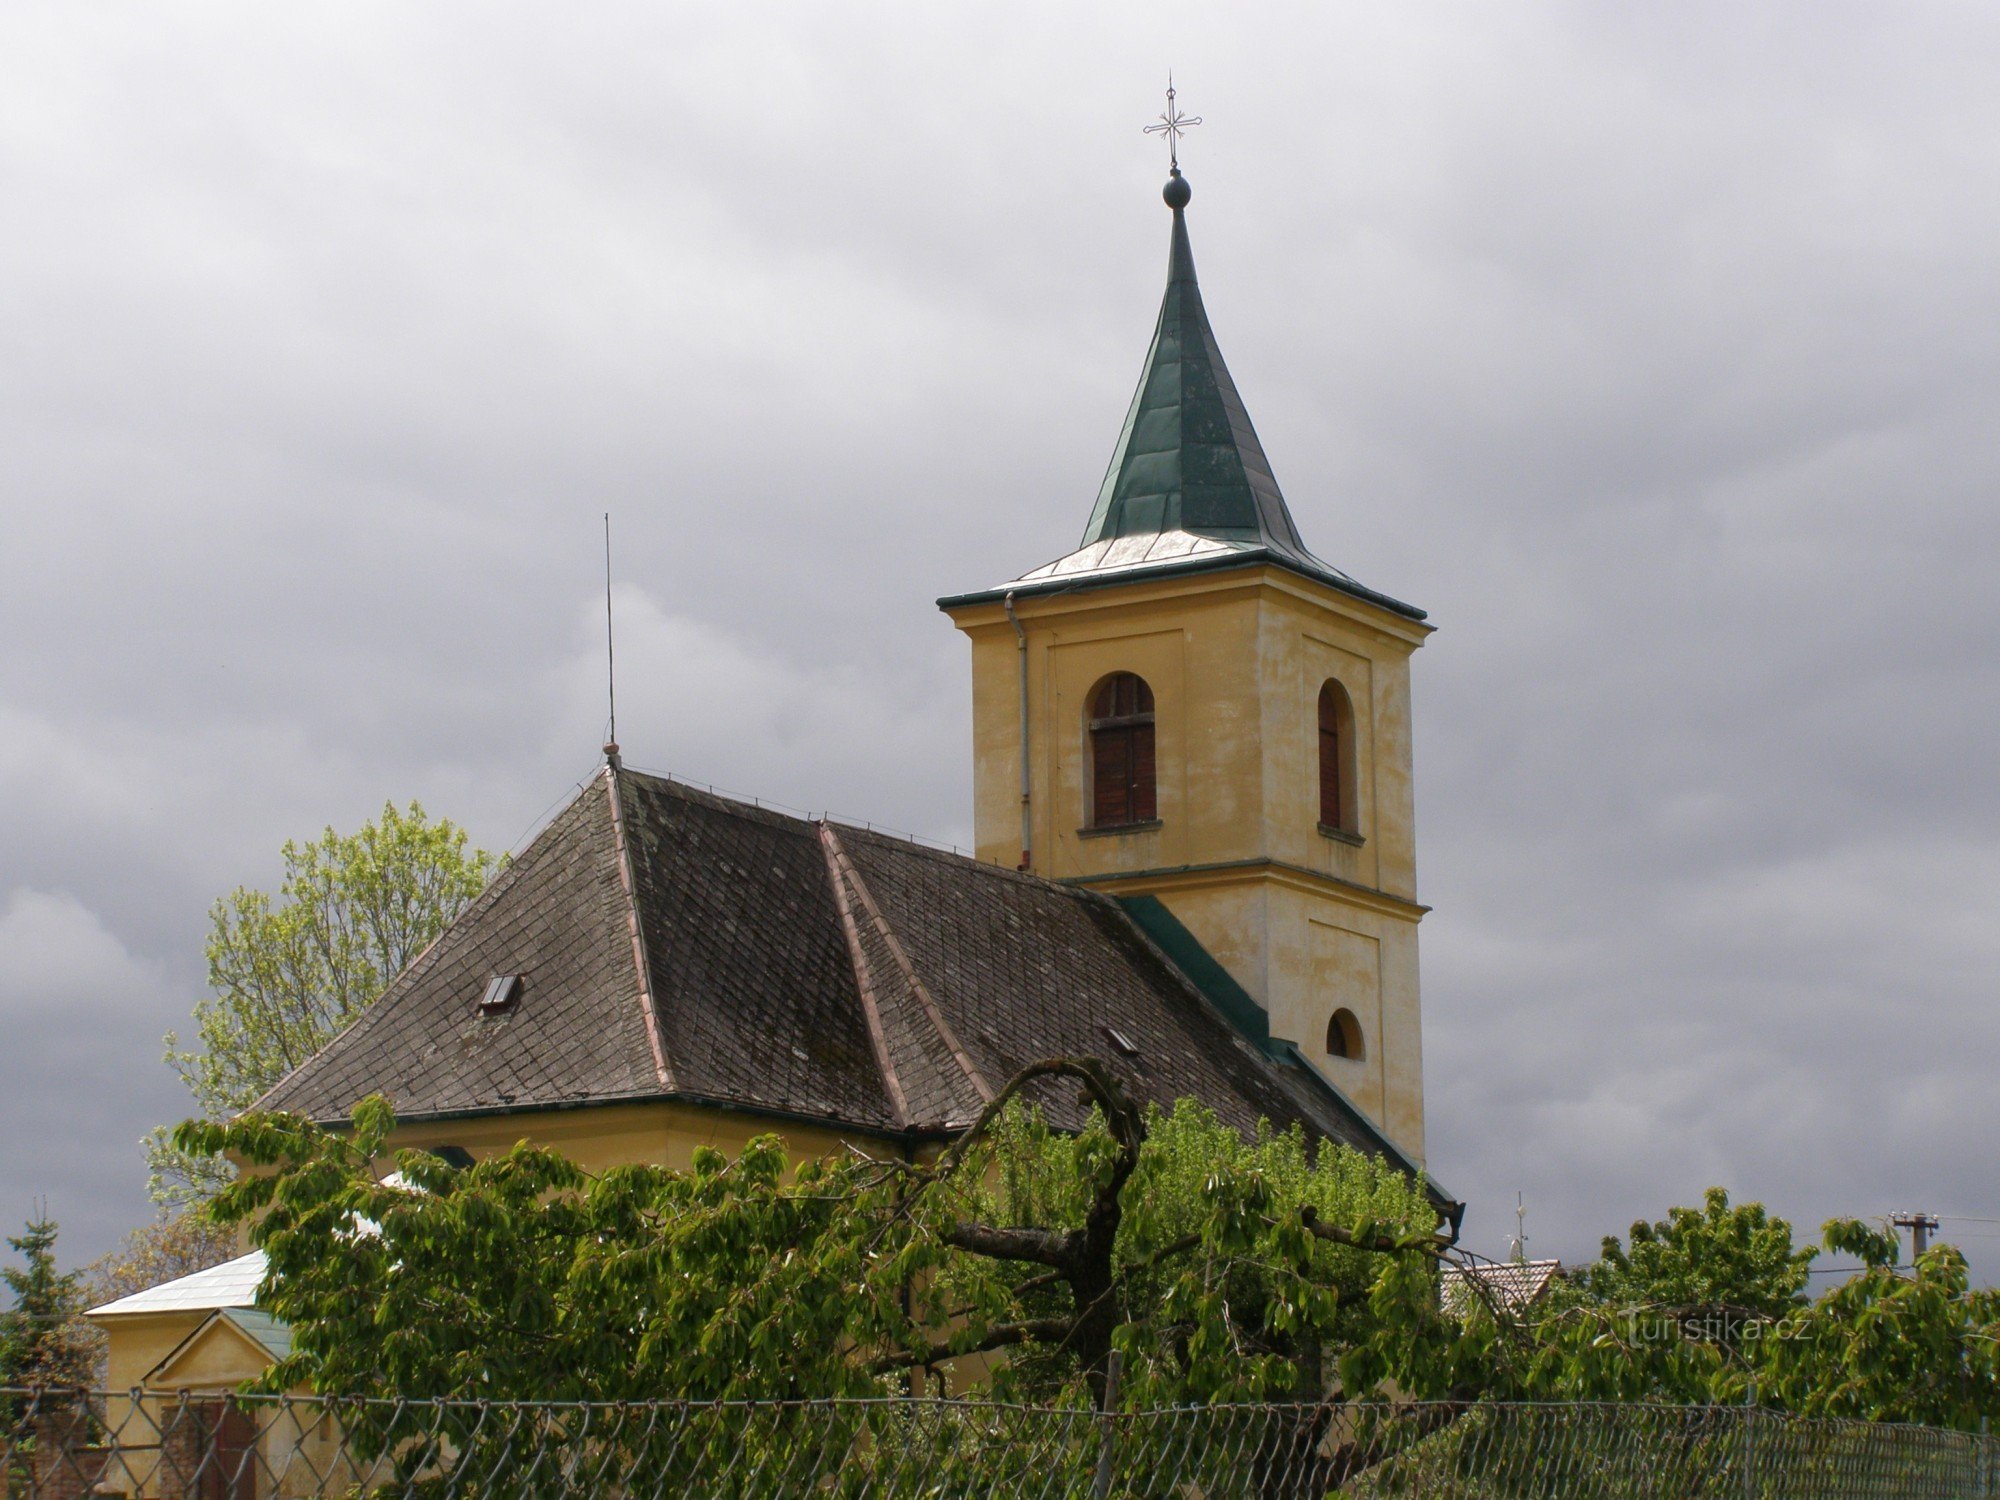 Boharyné - kyrkan St. Bartolomeus